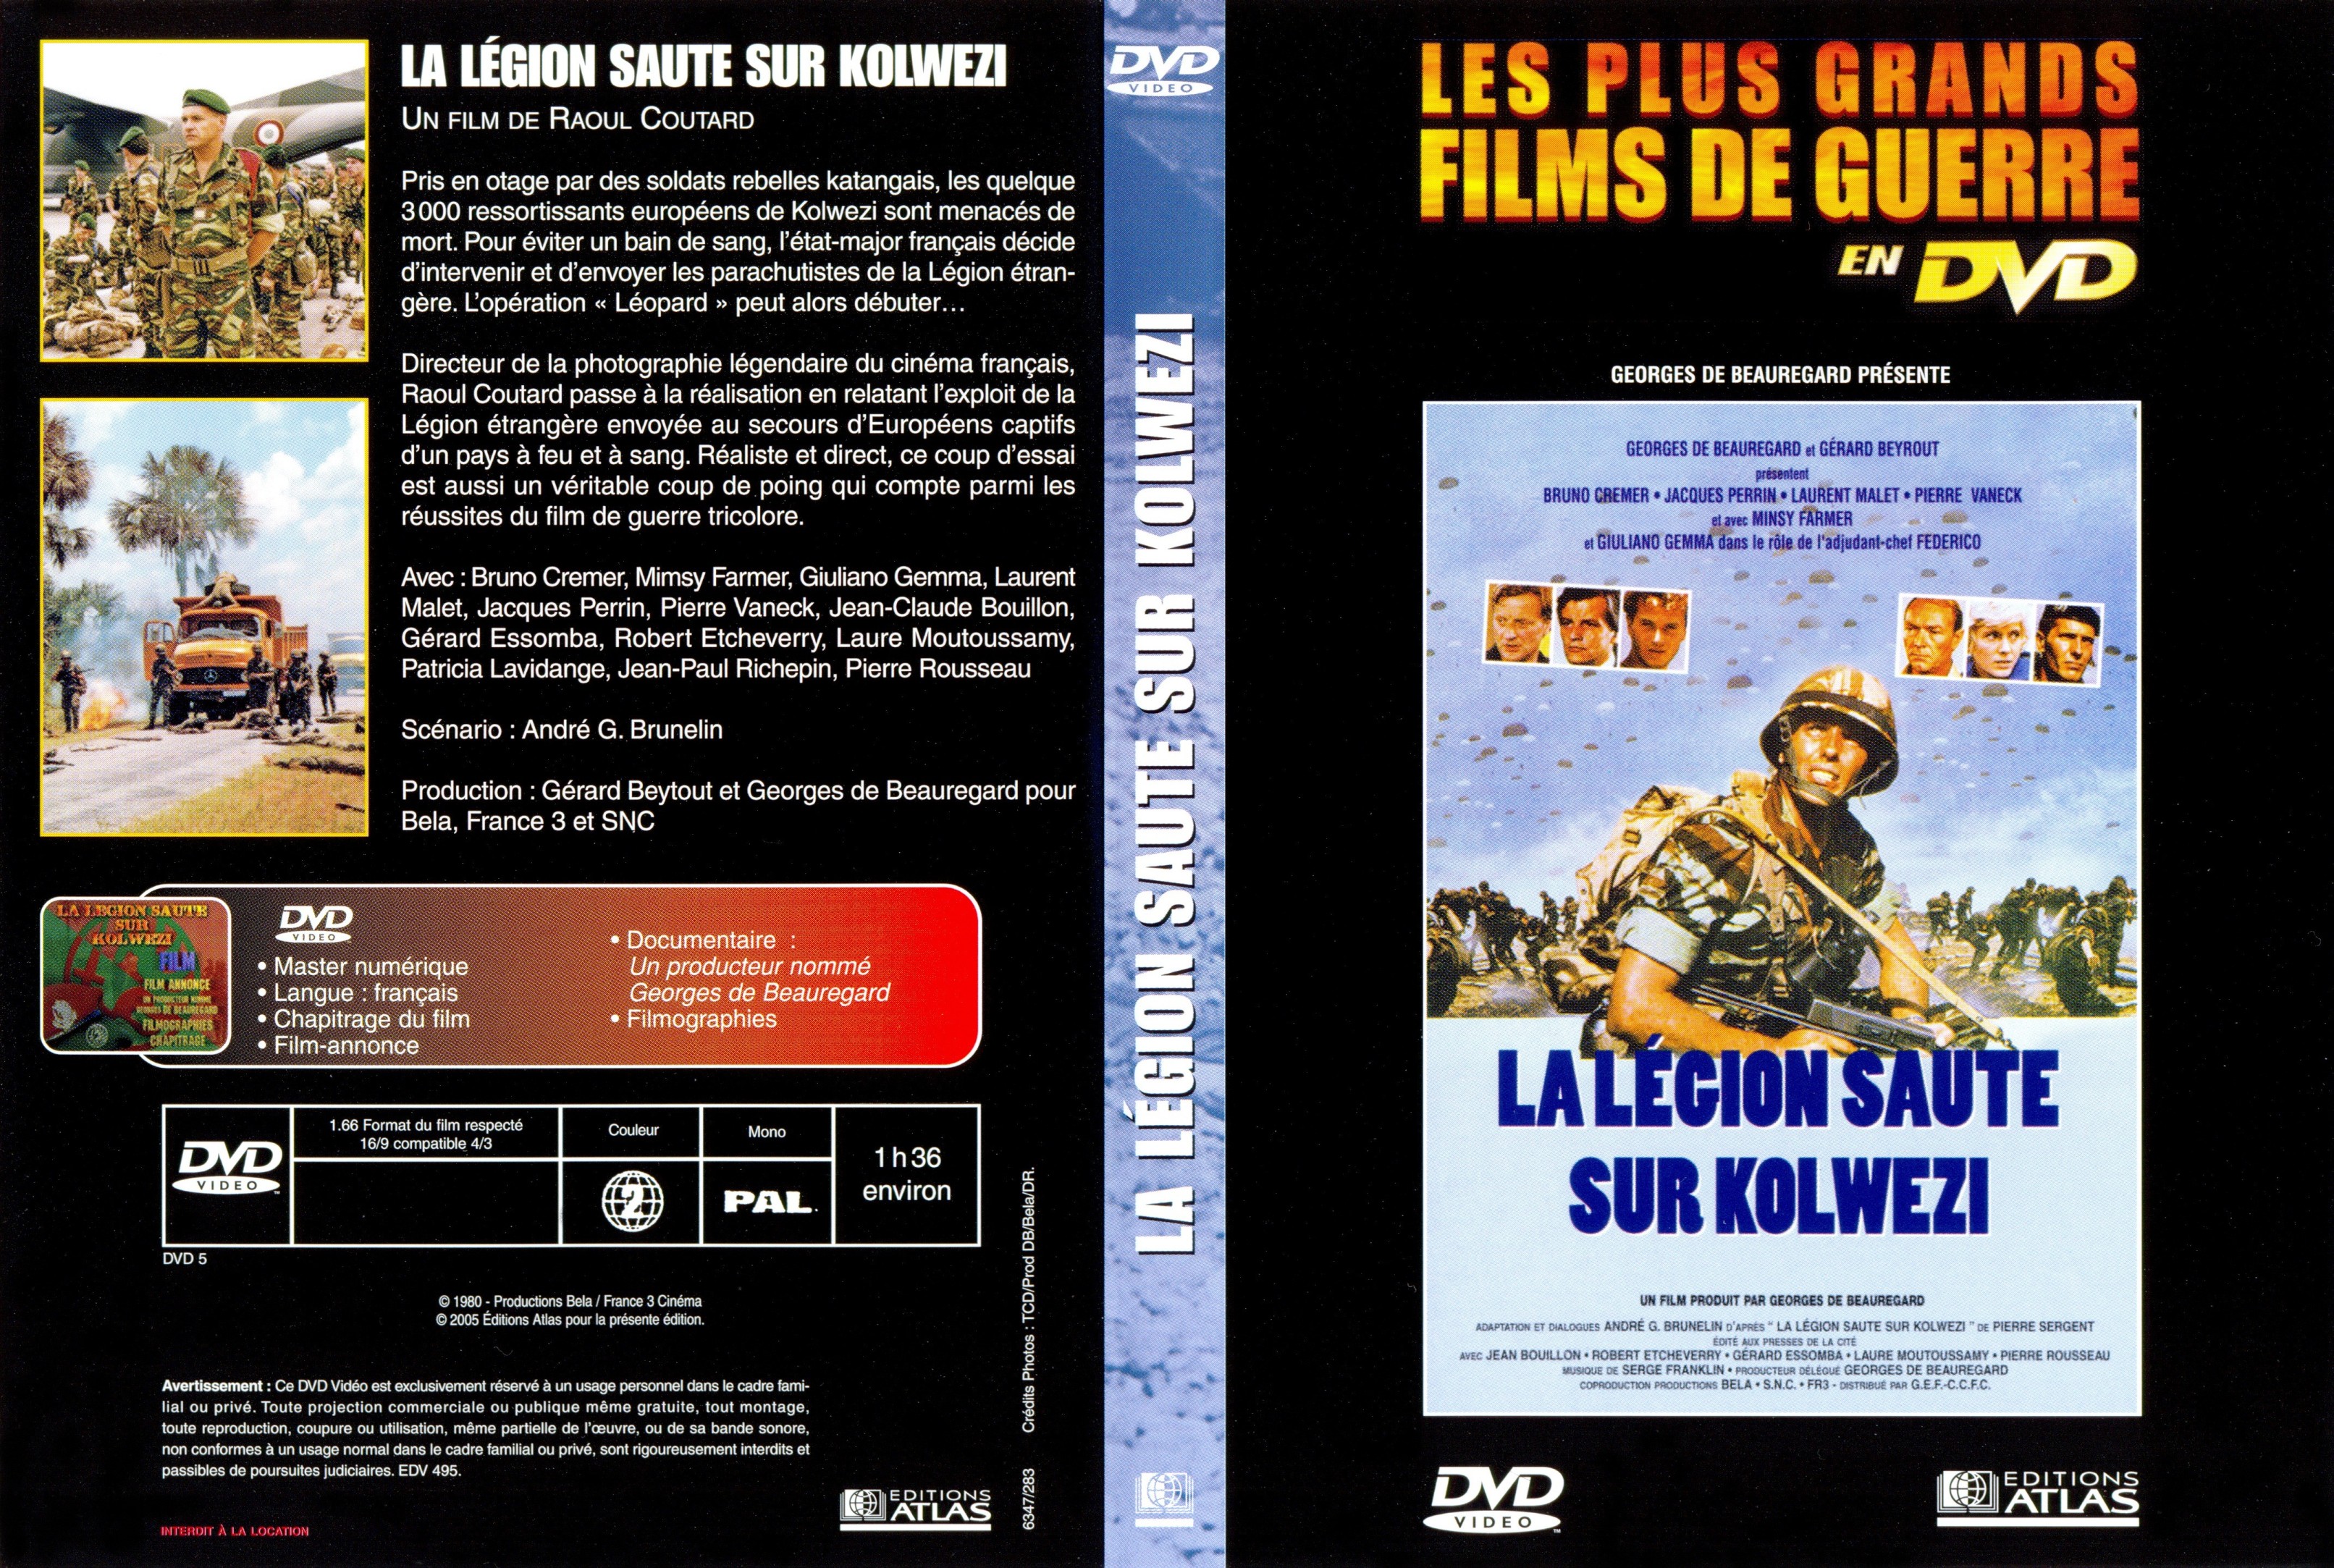 Jaquette DVD La lgion saute sur Kolwezi v2